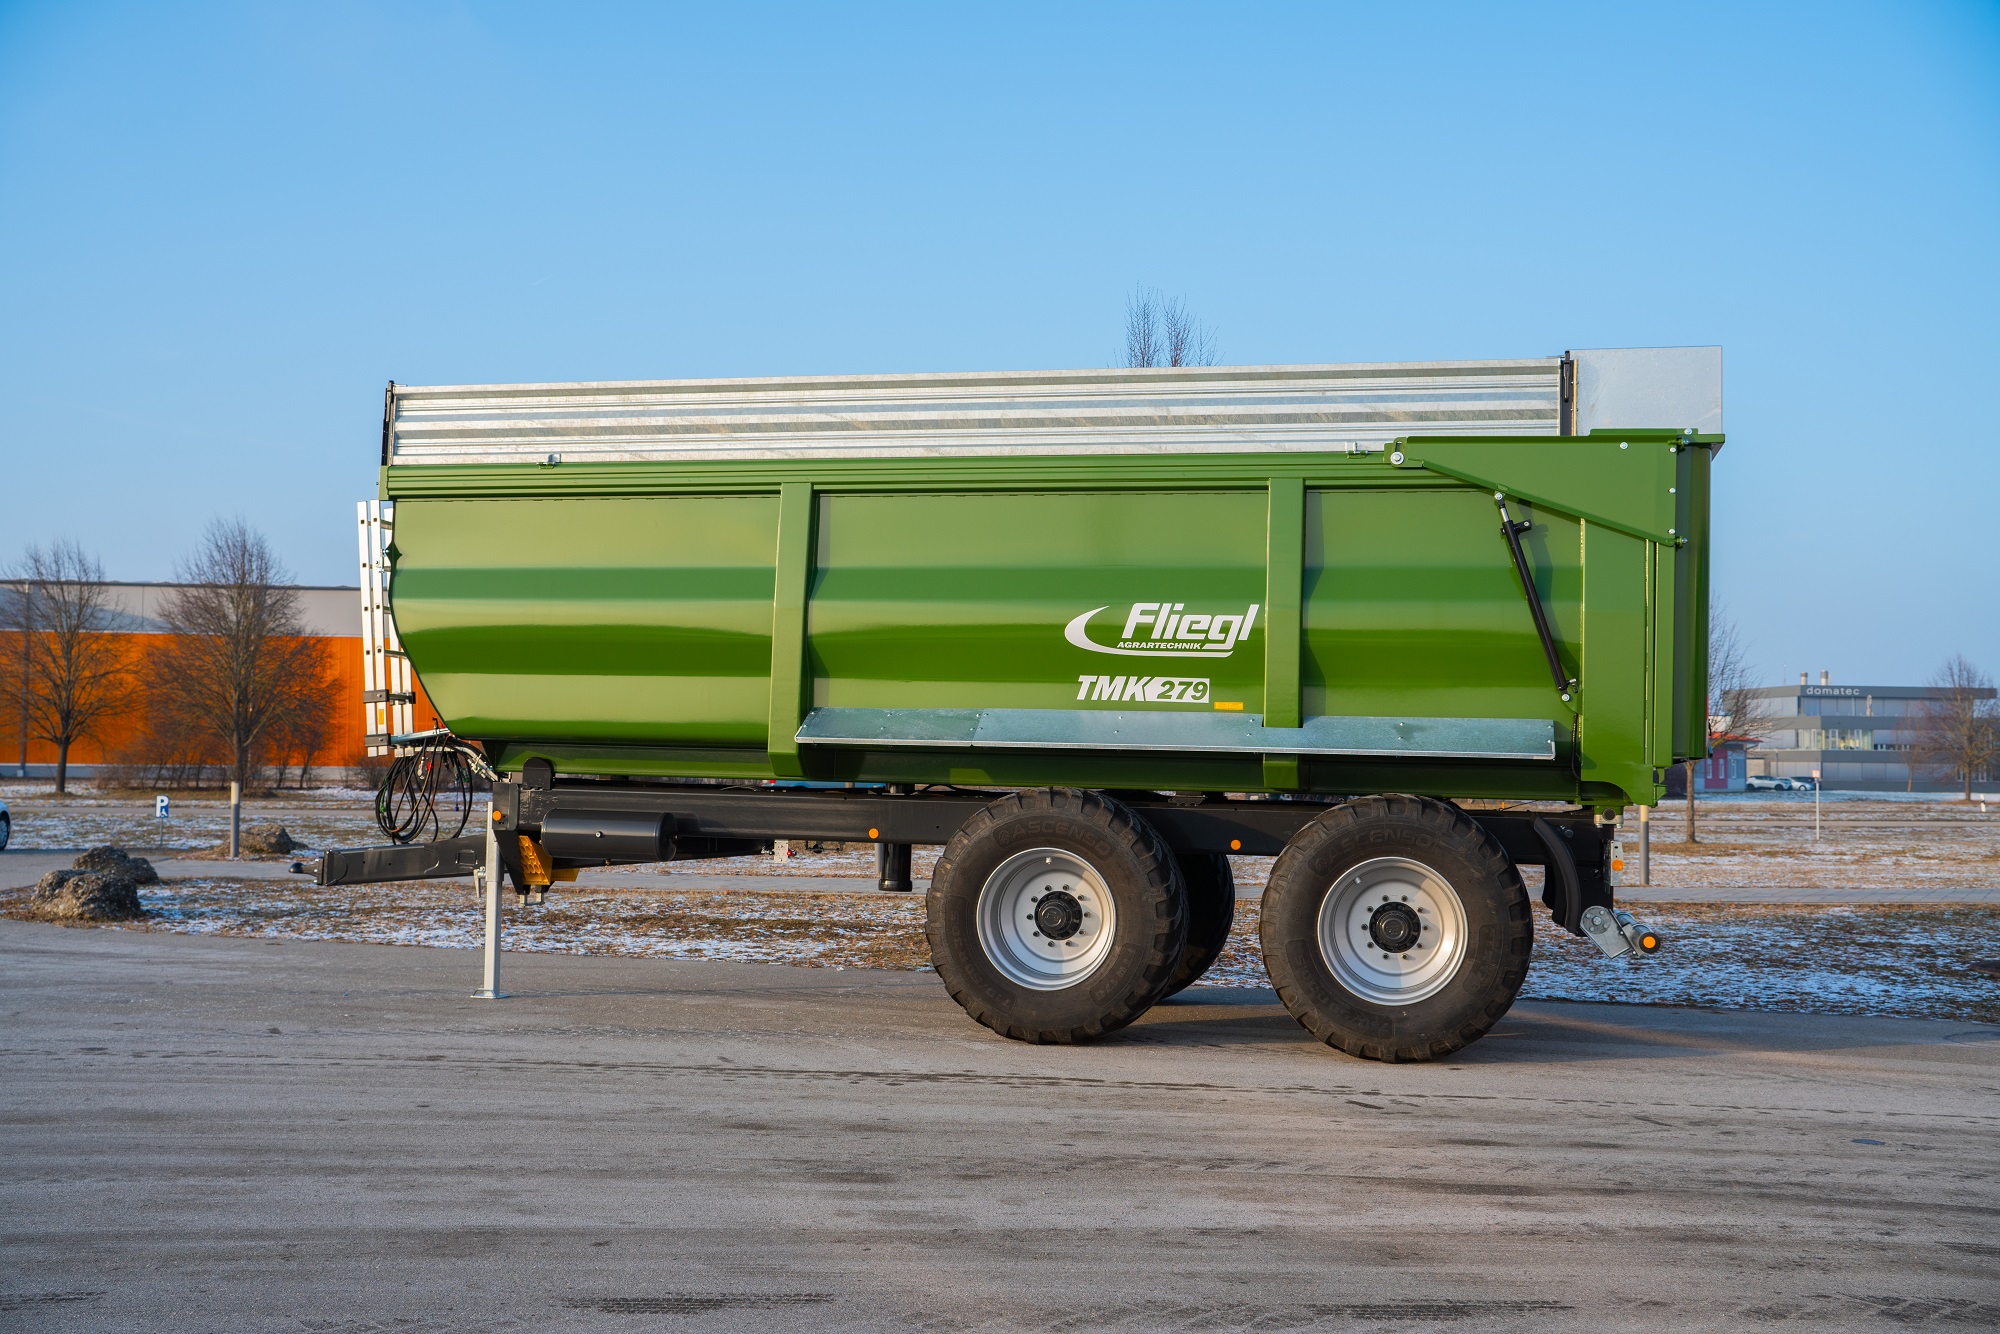 Nieuwe TMK 279 kiepwagen van Fliegl | LandbouwMechanisatie